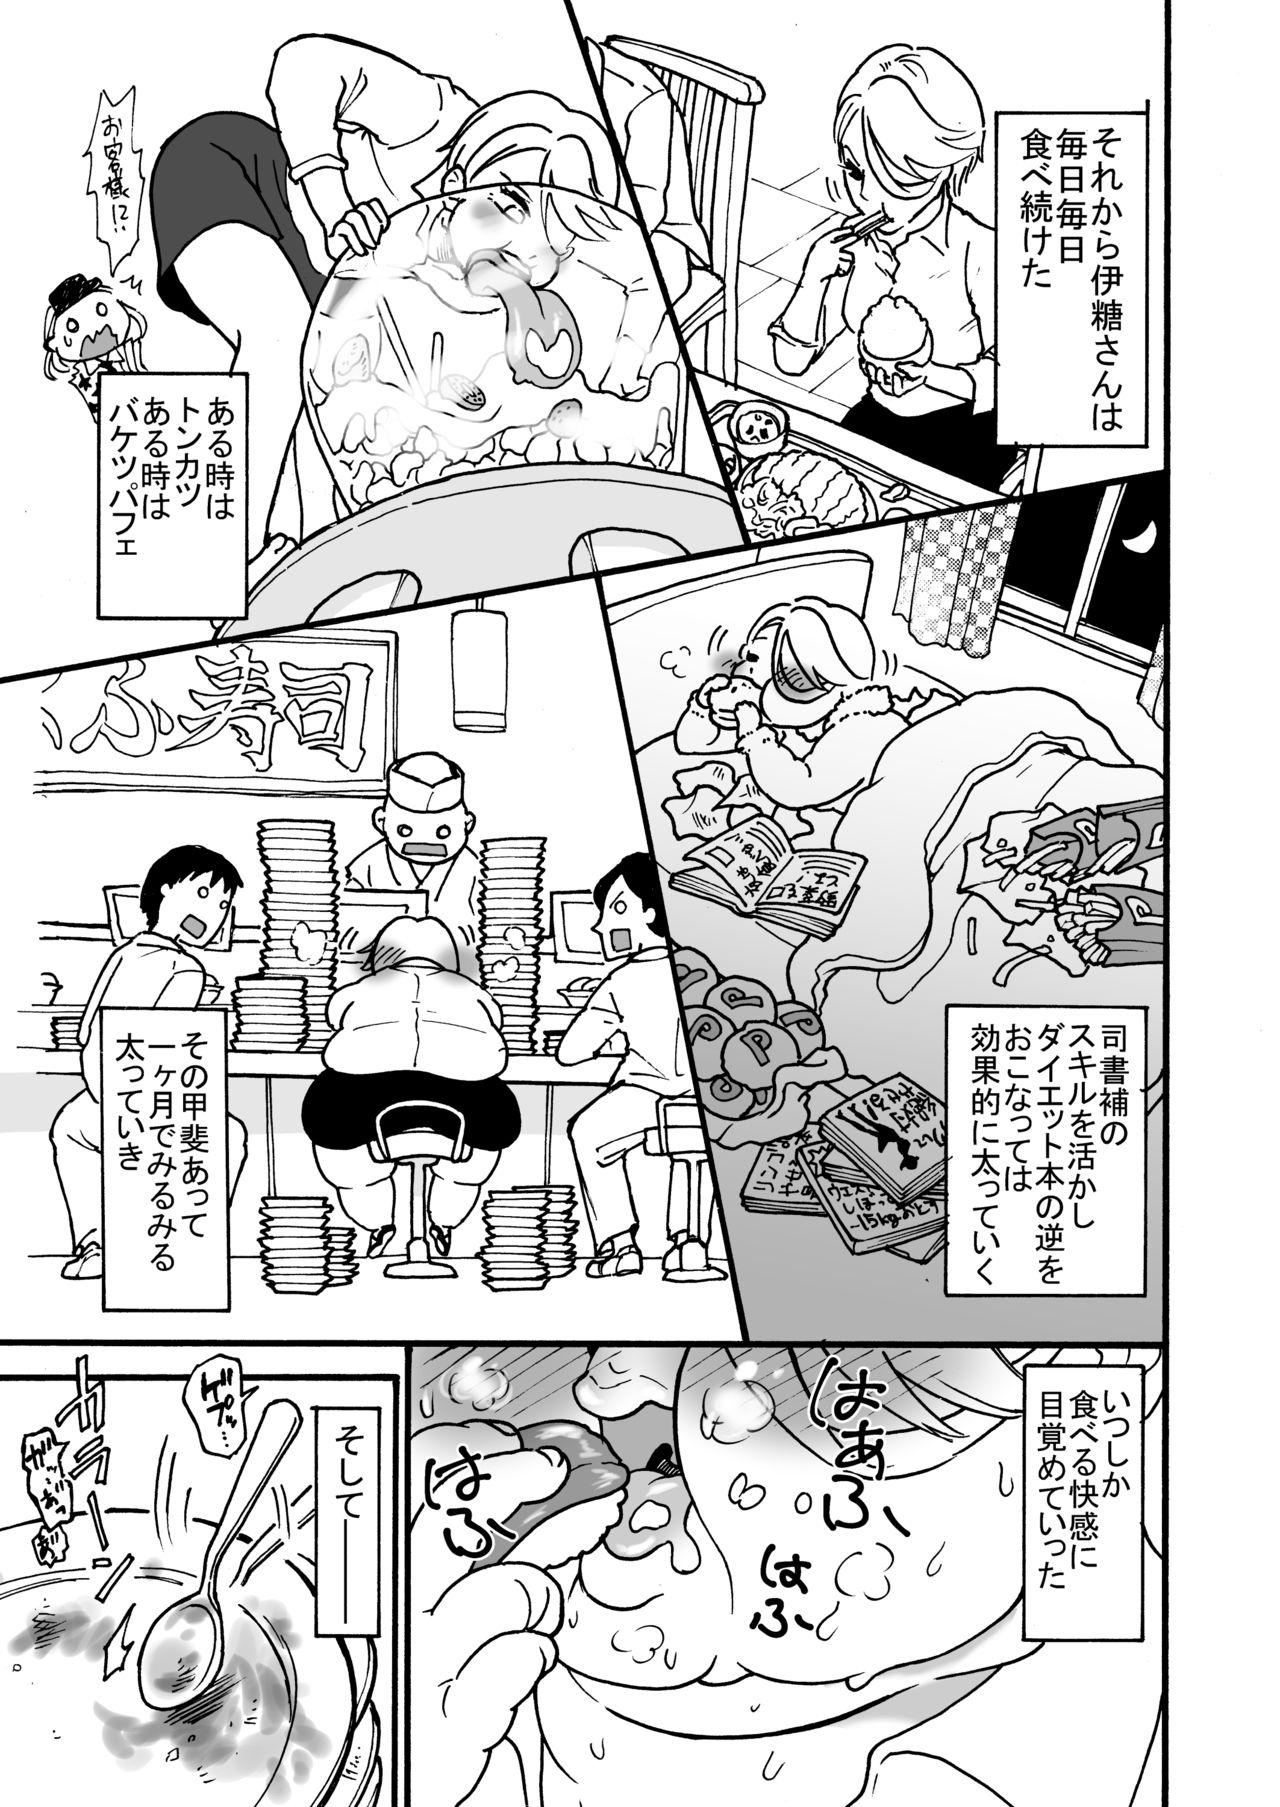 Gorda himanka shishoho no itou-san - Original Ruiva - Page 4